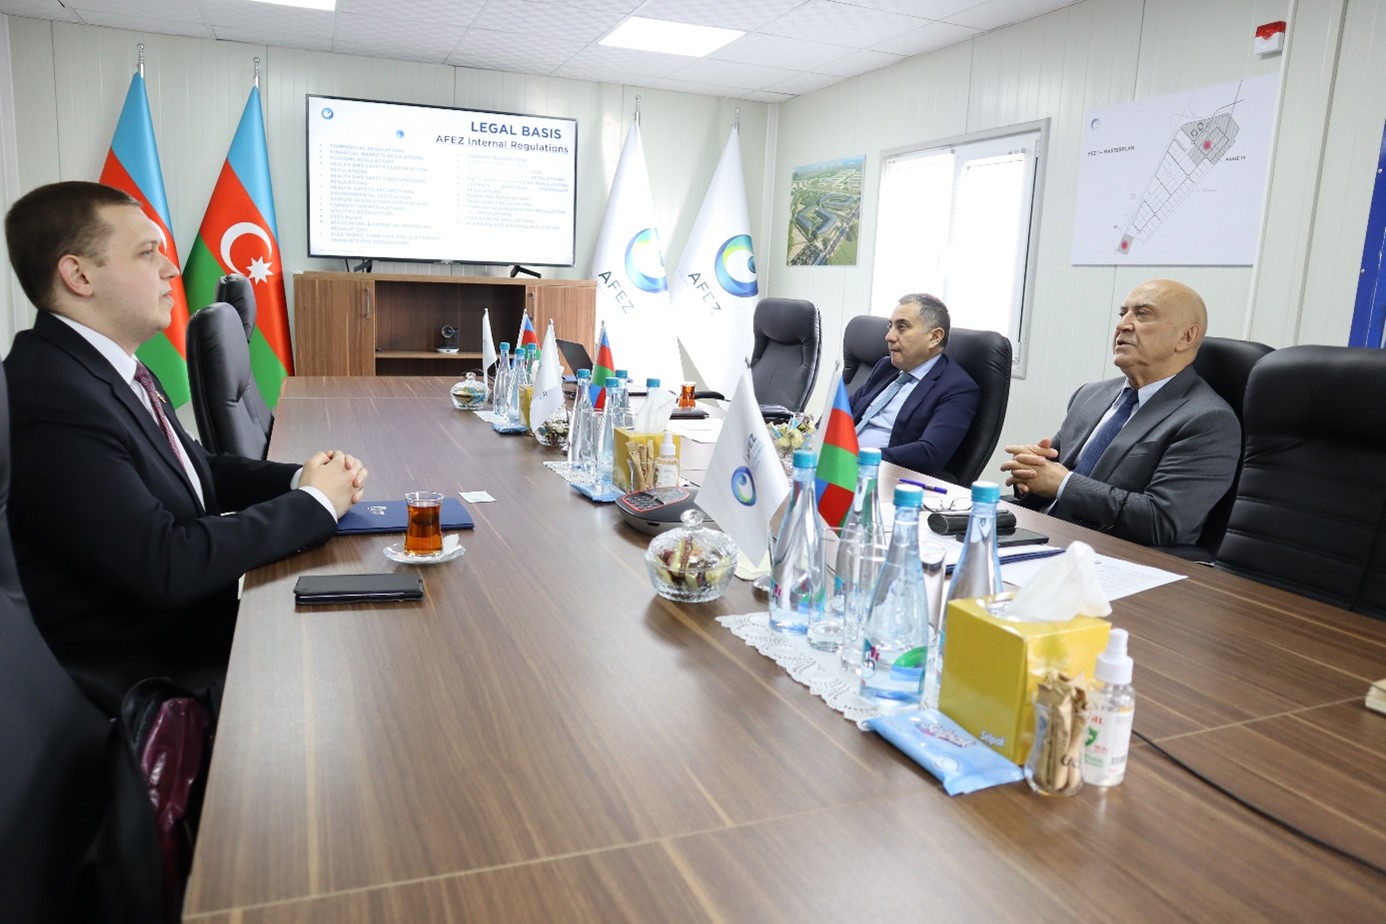 Urs Unkauf im Gespräch mit dem Vorstandsvorsitzenden der AFEZA, S.E. Valeh Alasgarov und dem stellvertretenden Vorstandsvorsitzenden, Dr. Ismayil Manafov.